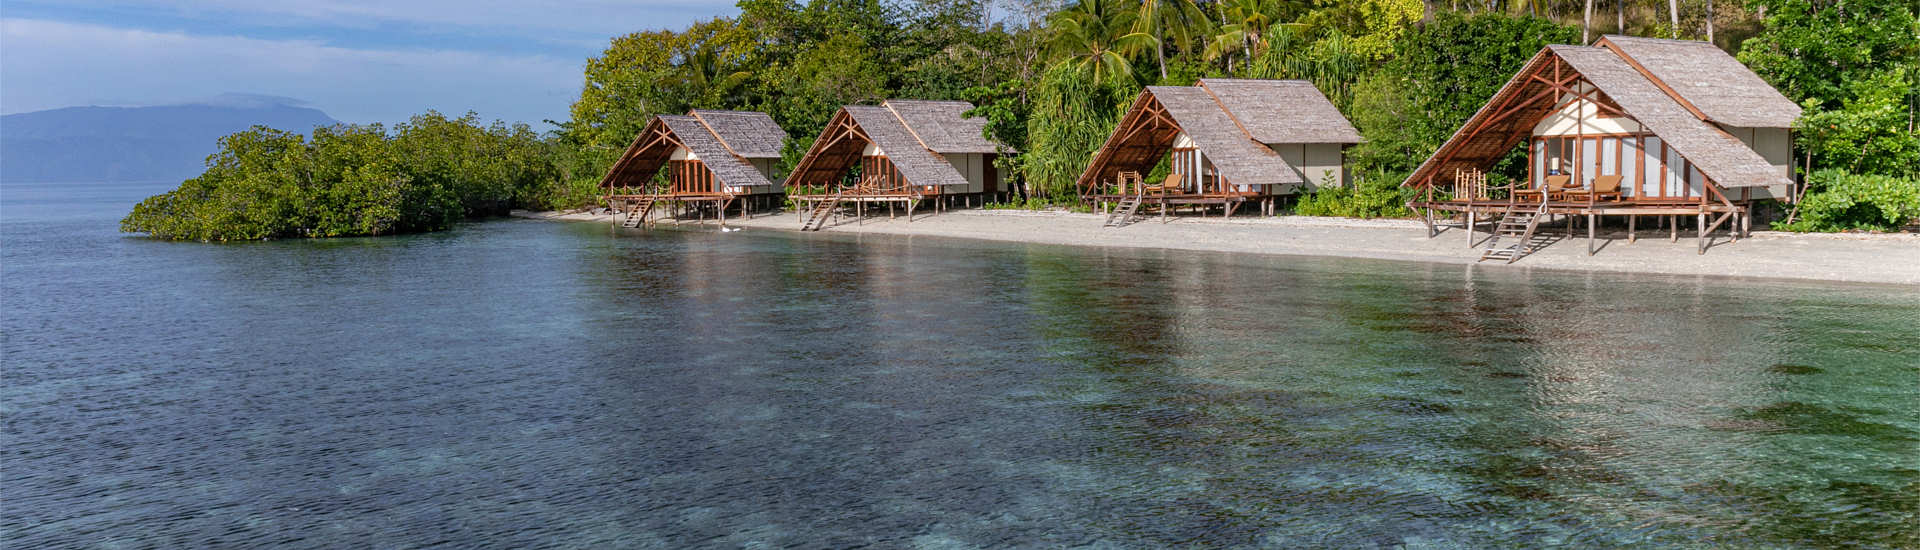 Elegante Anlage auf einer ansonsten unbewohnten Insel Halmaheras 